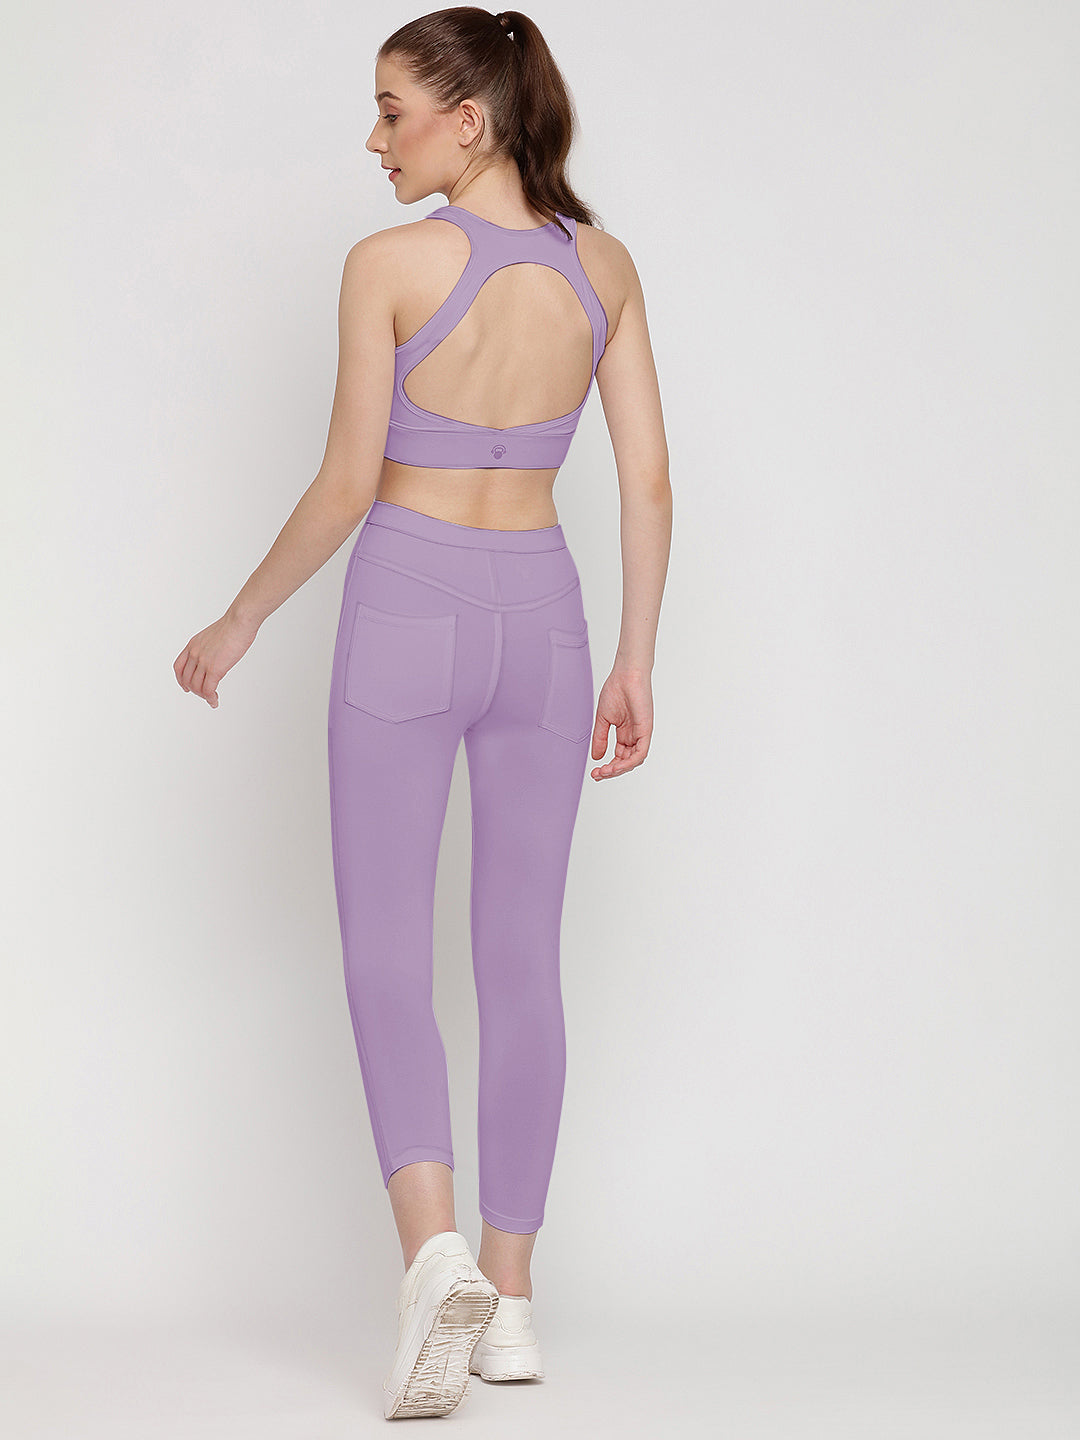 Flex Fit Pocket Tights 23” & Sports Bra Set - Miami Purple